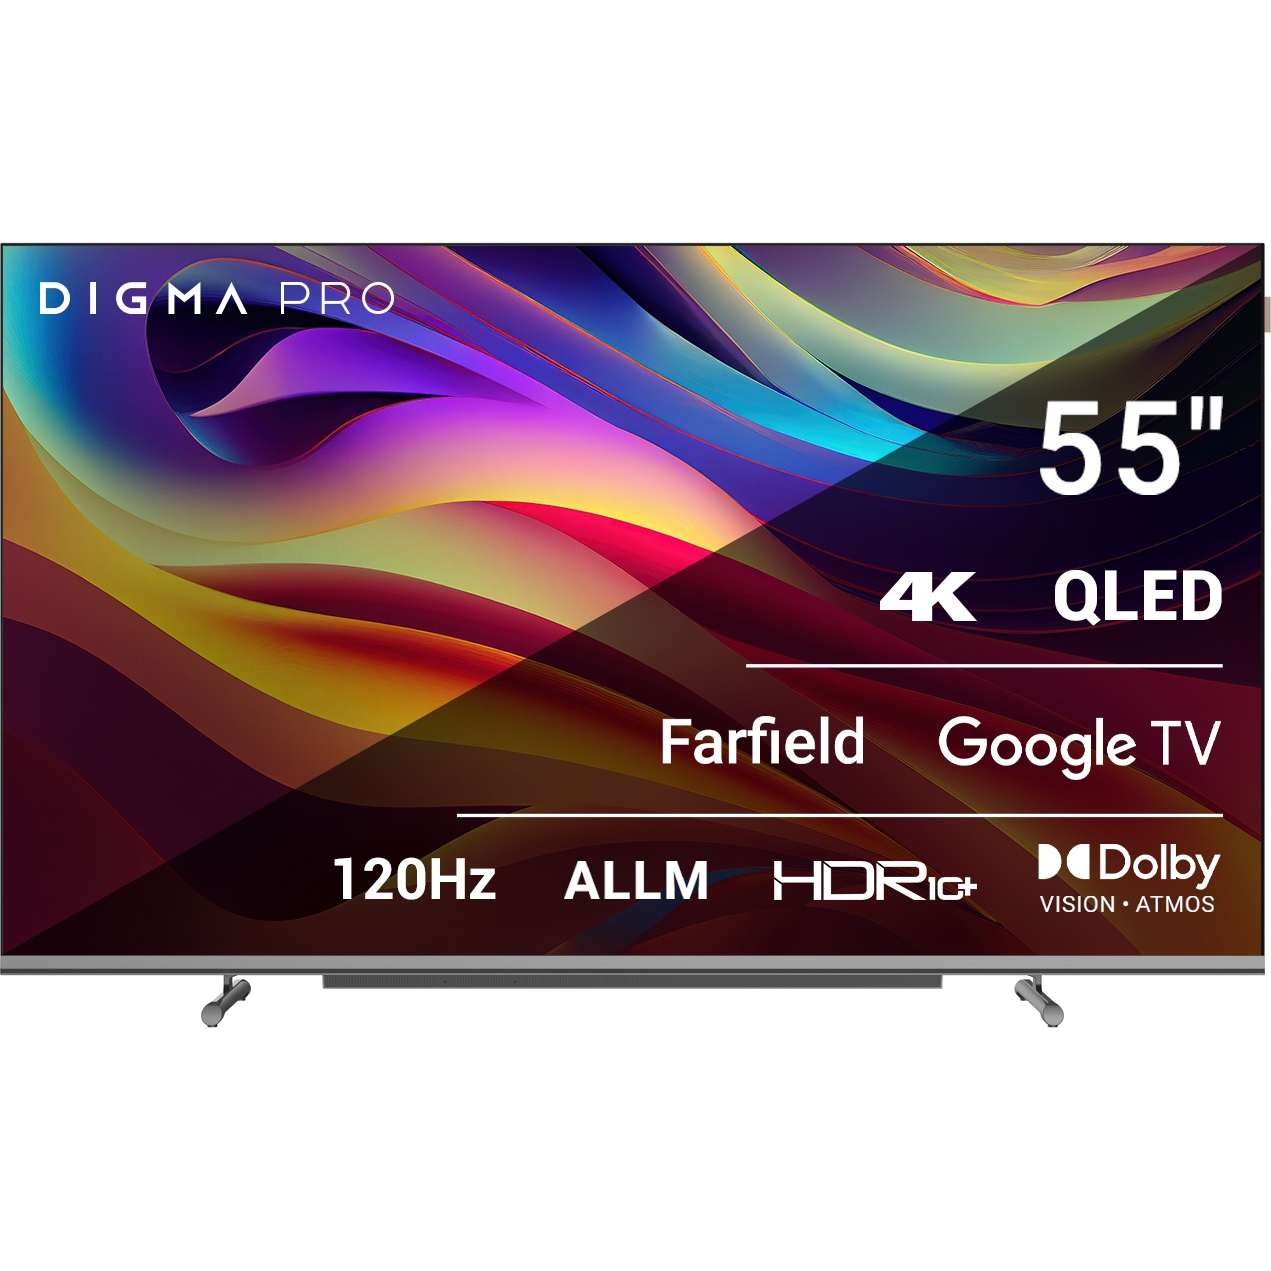 Телевизор Digma Pro 55 55L телевизор digma dm led43mbb21